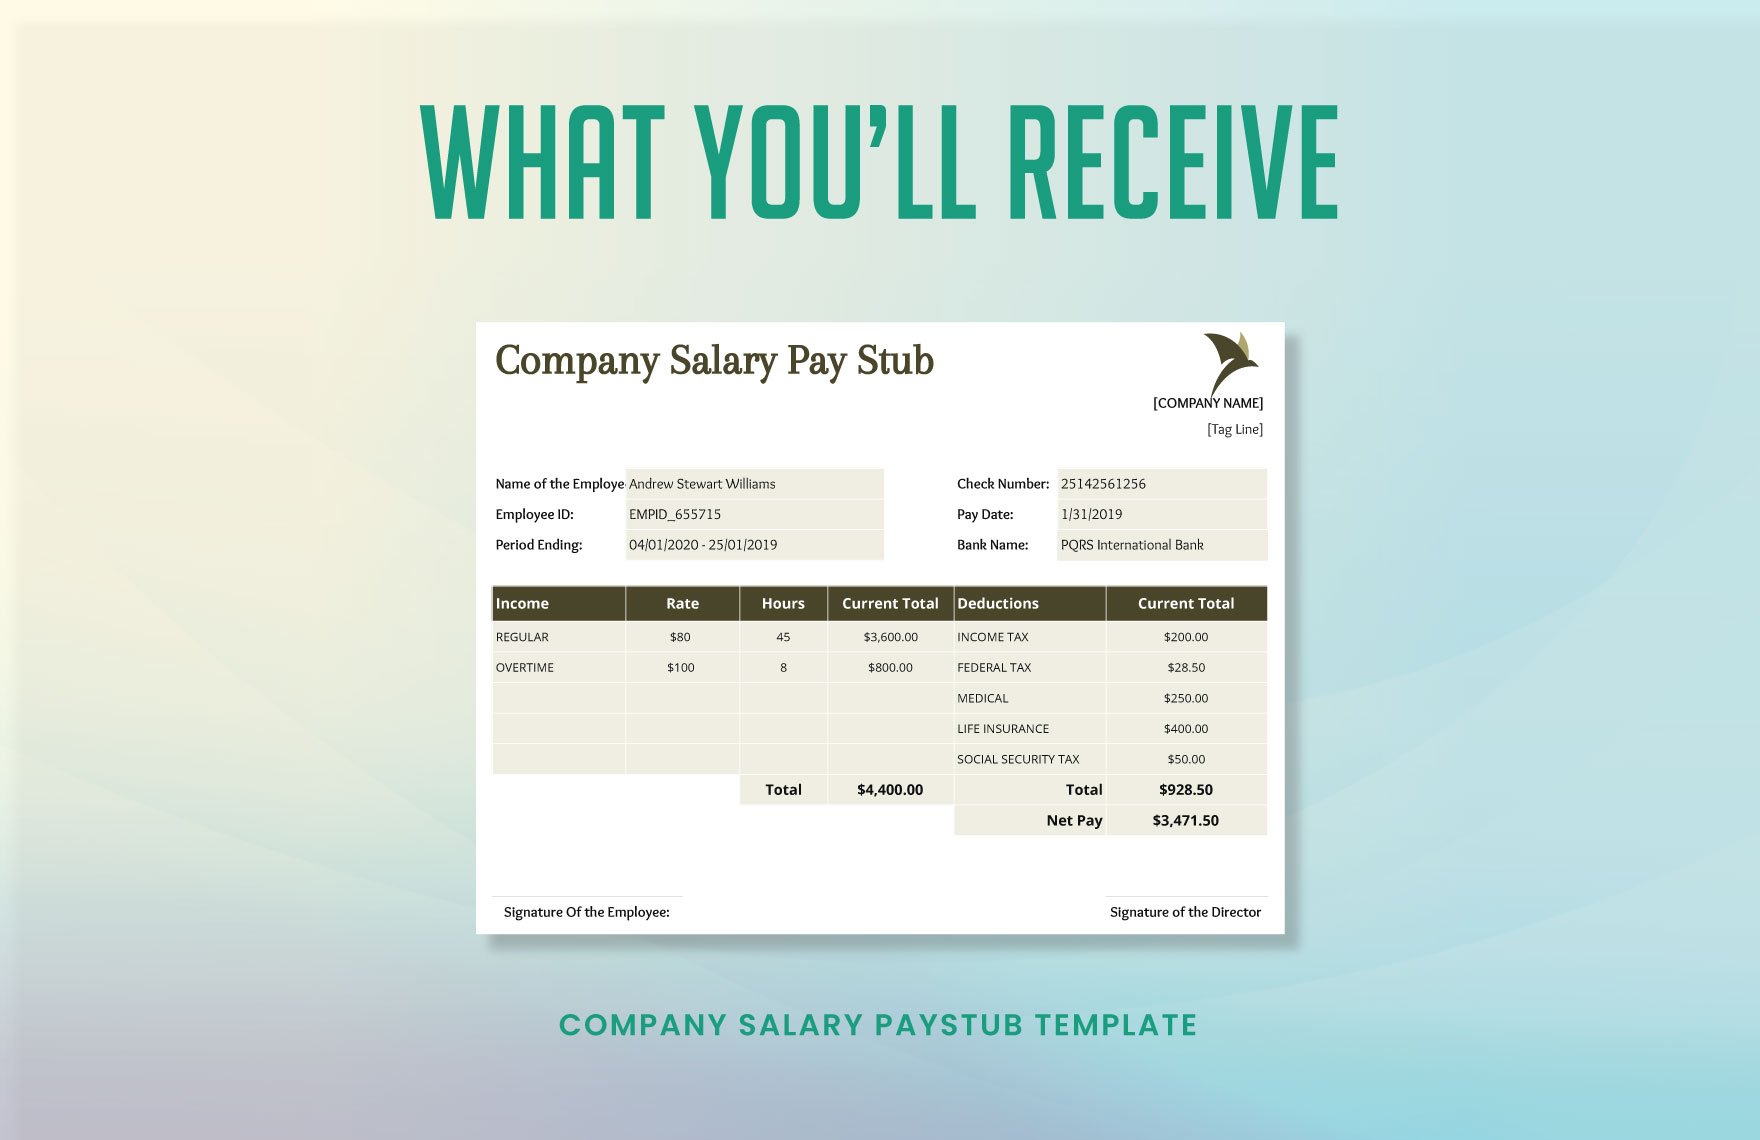 Company Salary Pay Stub Instructions